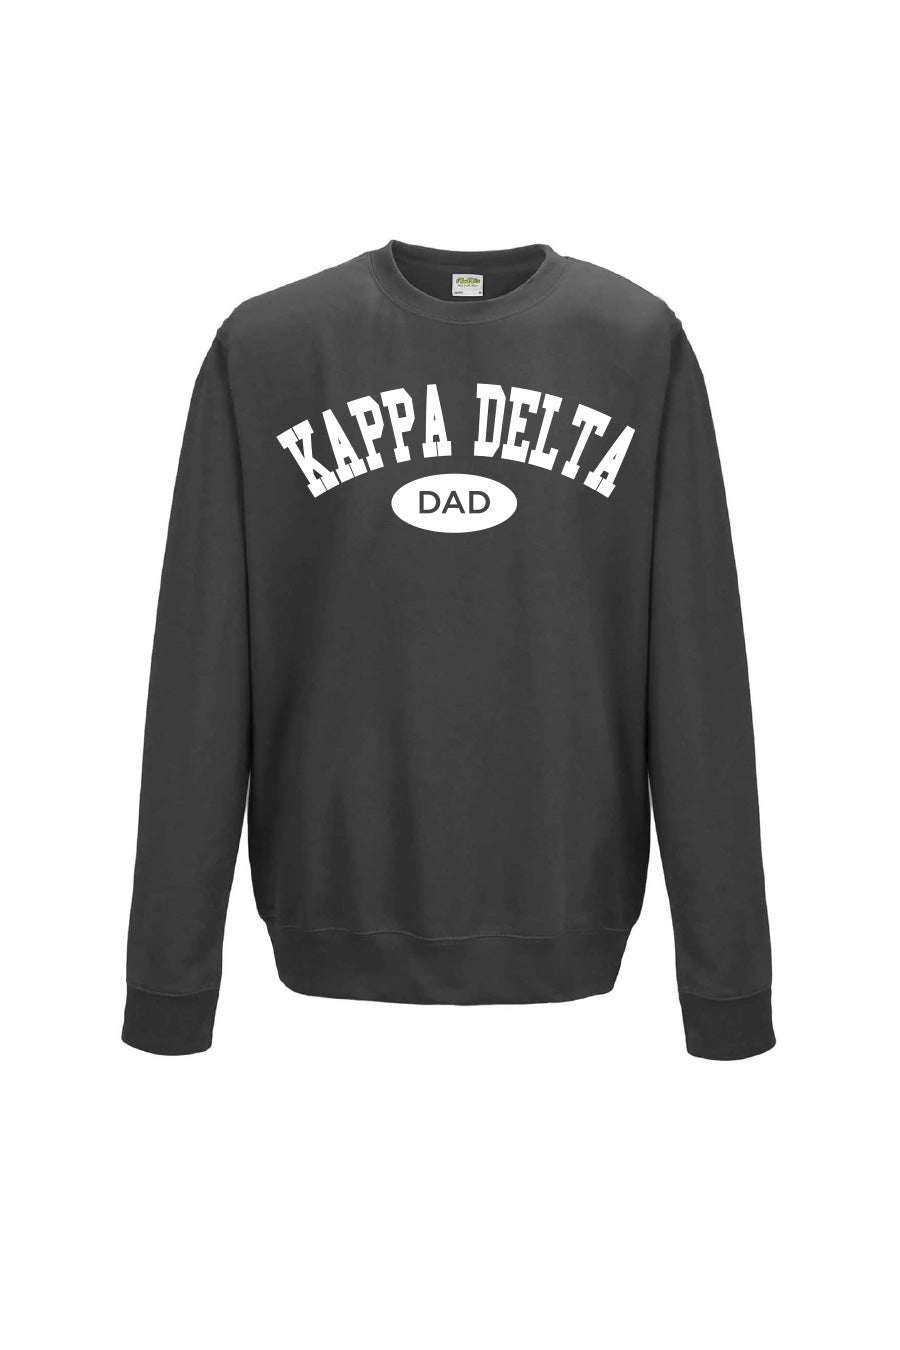 Kaitlyn Kappa Delta Dad Crew